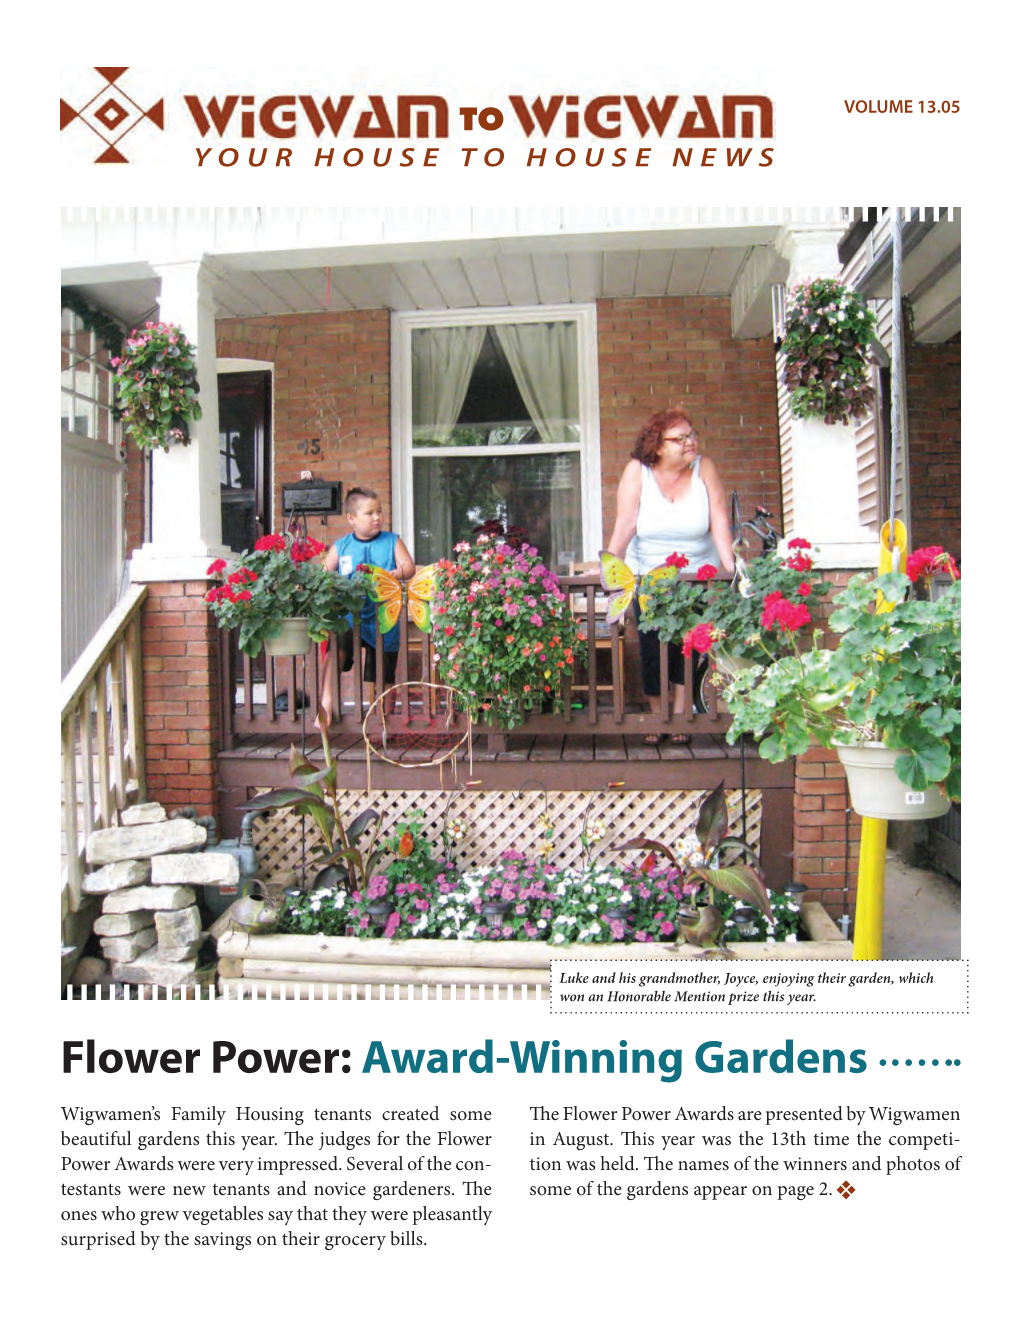 Flower Power: Award-Winning Gardens